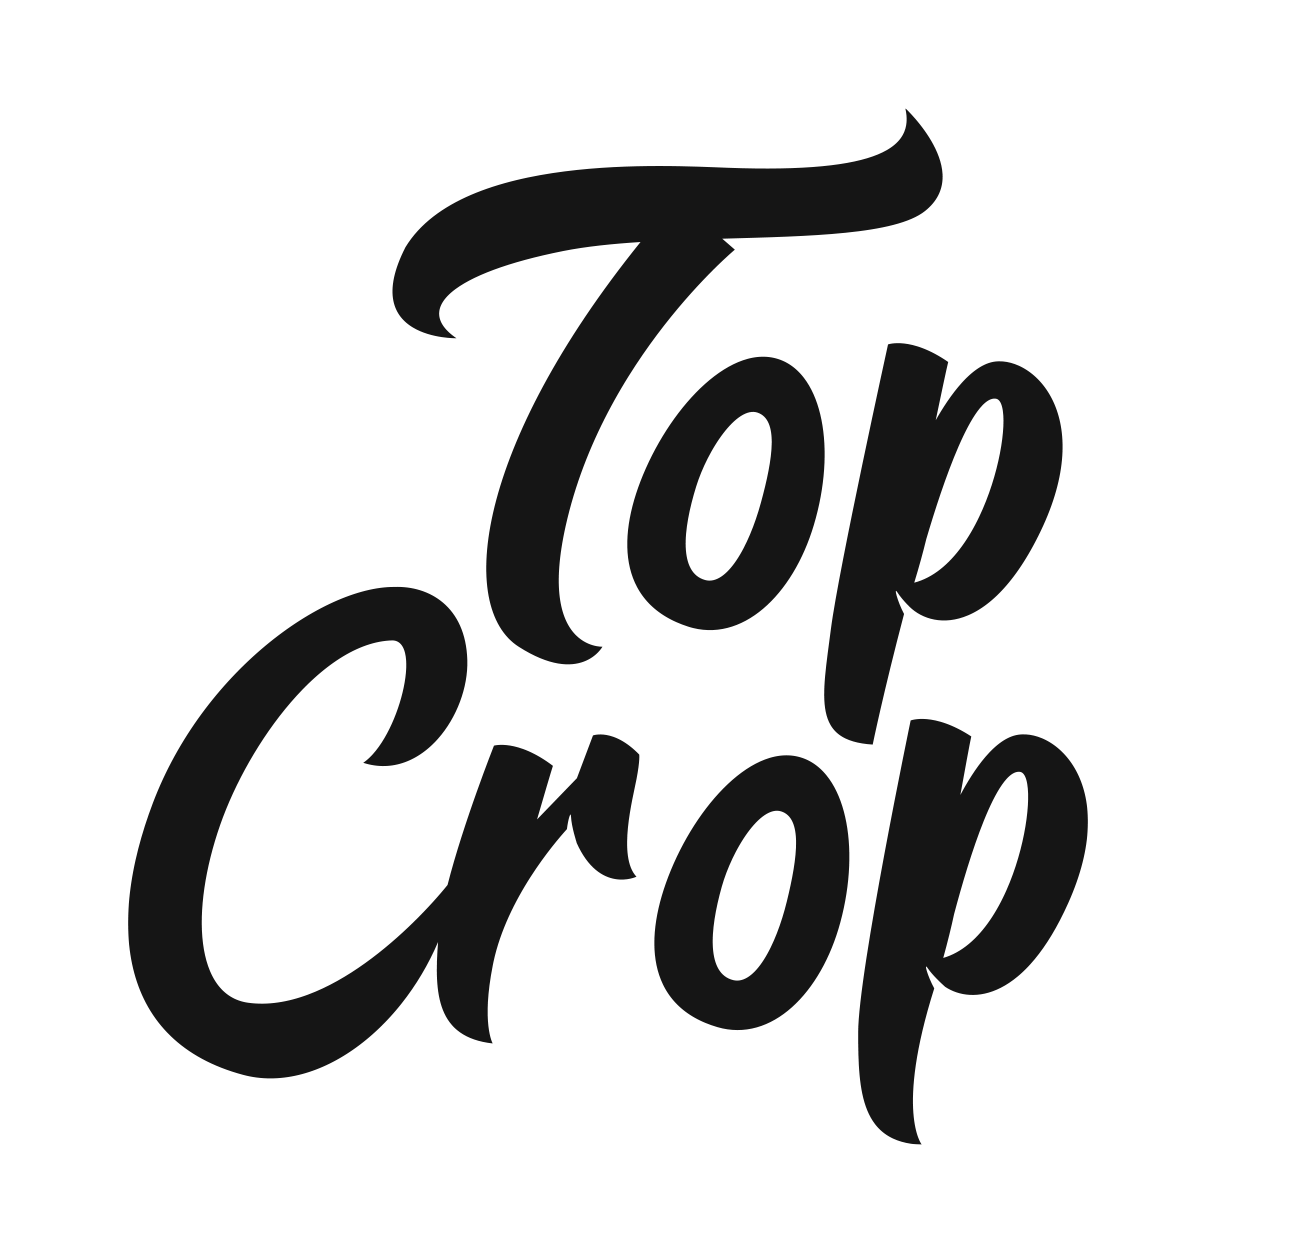 Top Crop Cannabis Co.